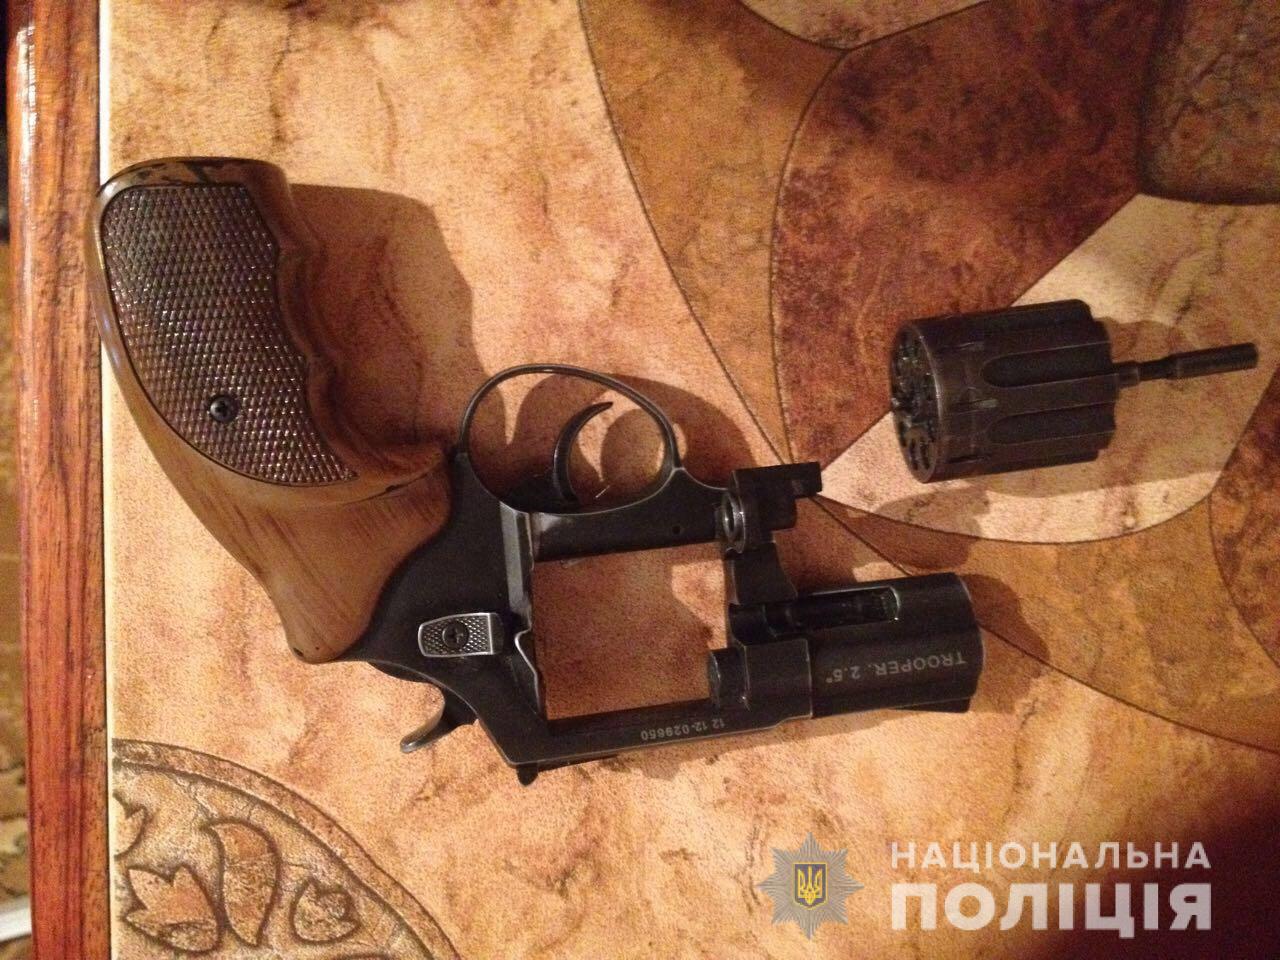 В ході обшуку у жителя Нового Давидкова виявили два пістолети без дозволів (ФОТО)